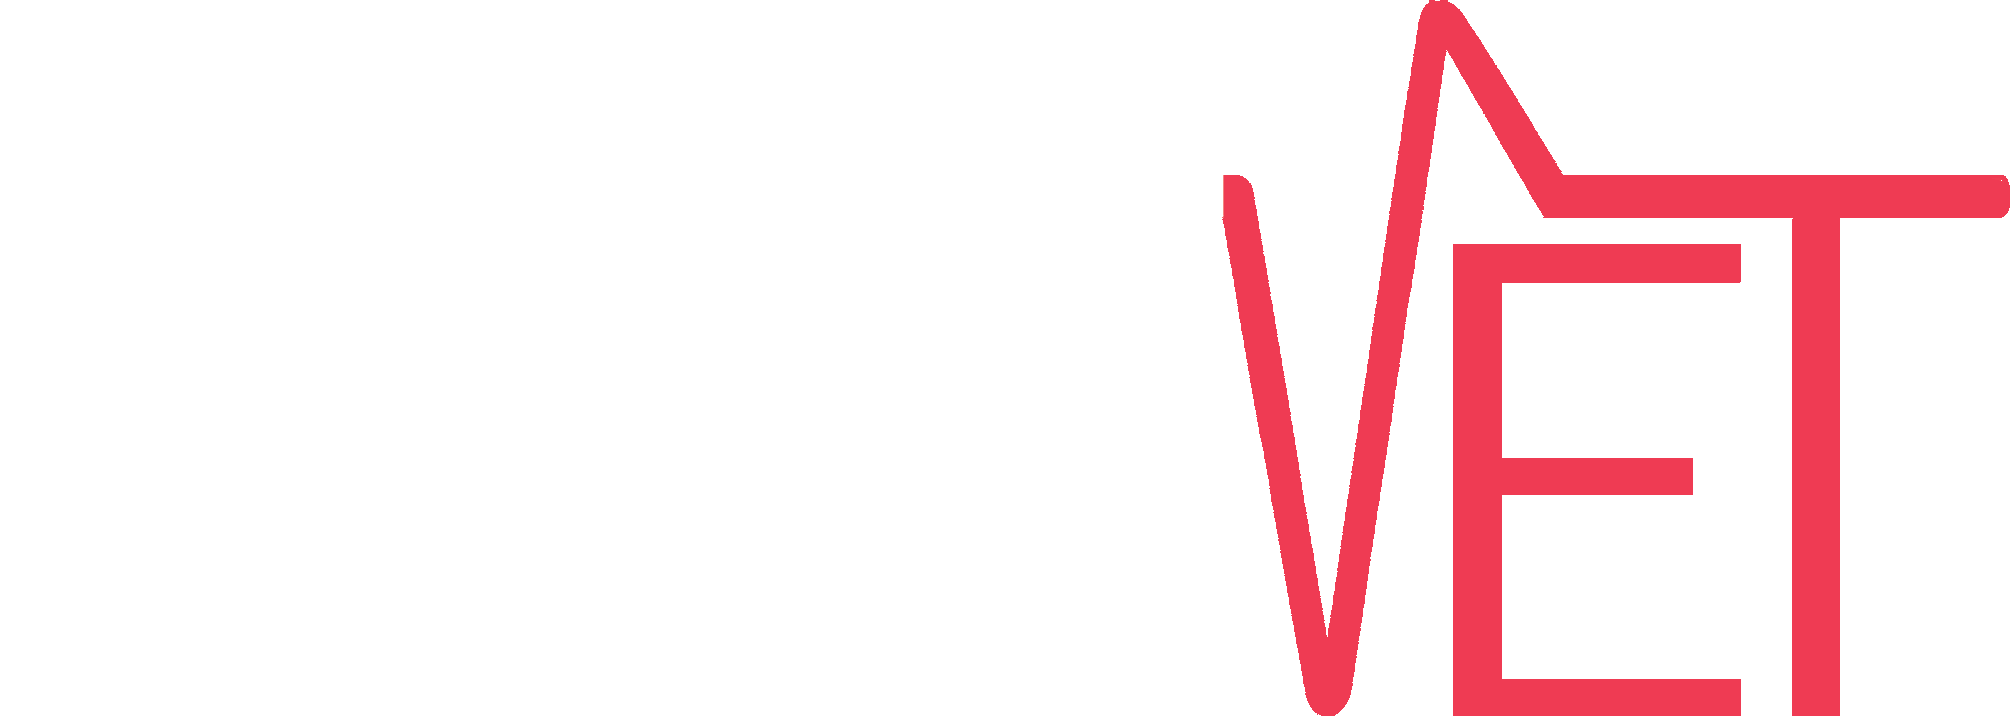 Pet Vet Logo